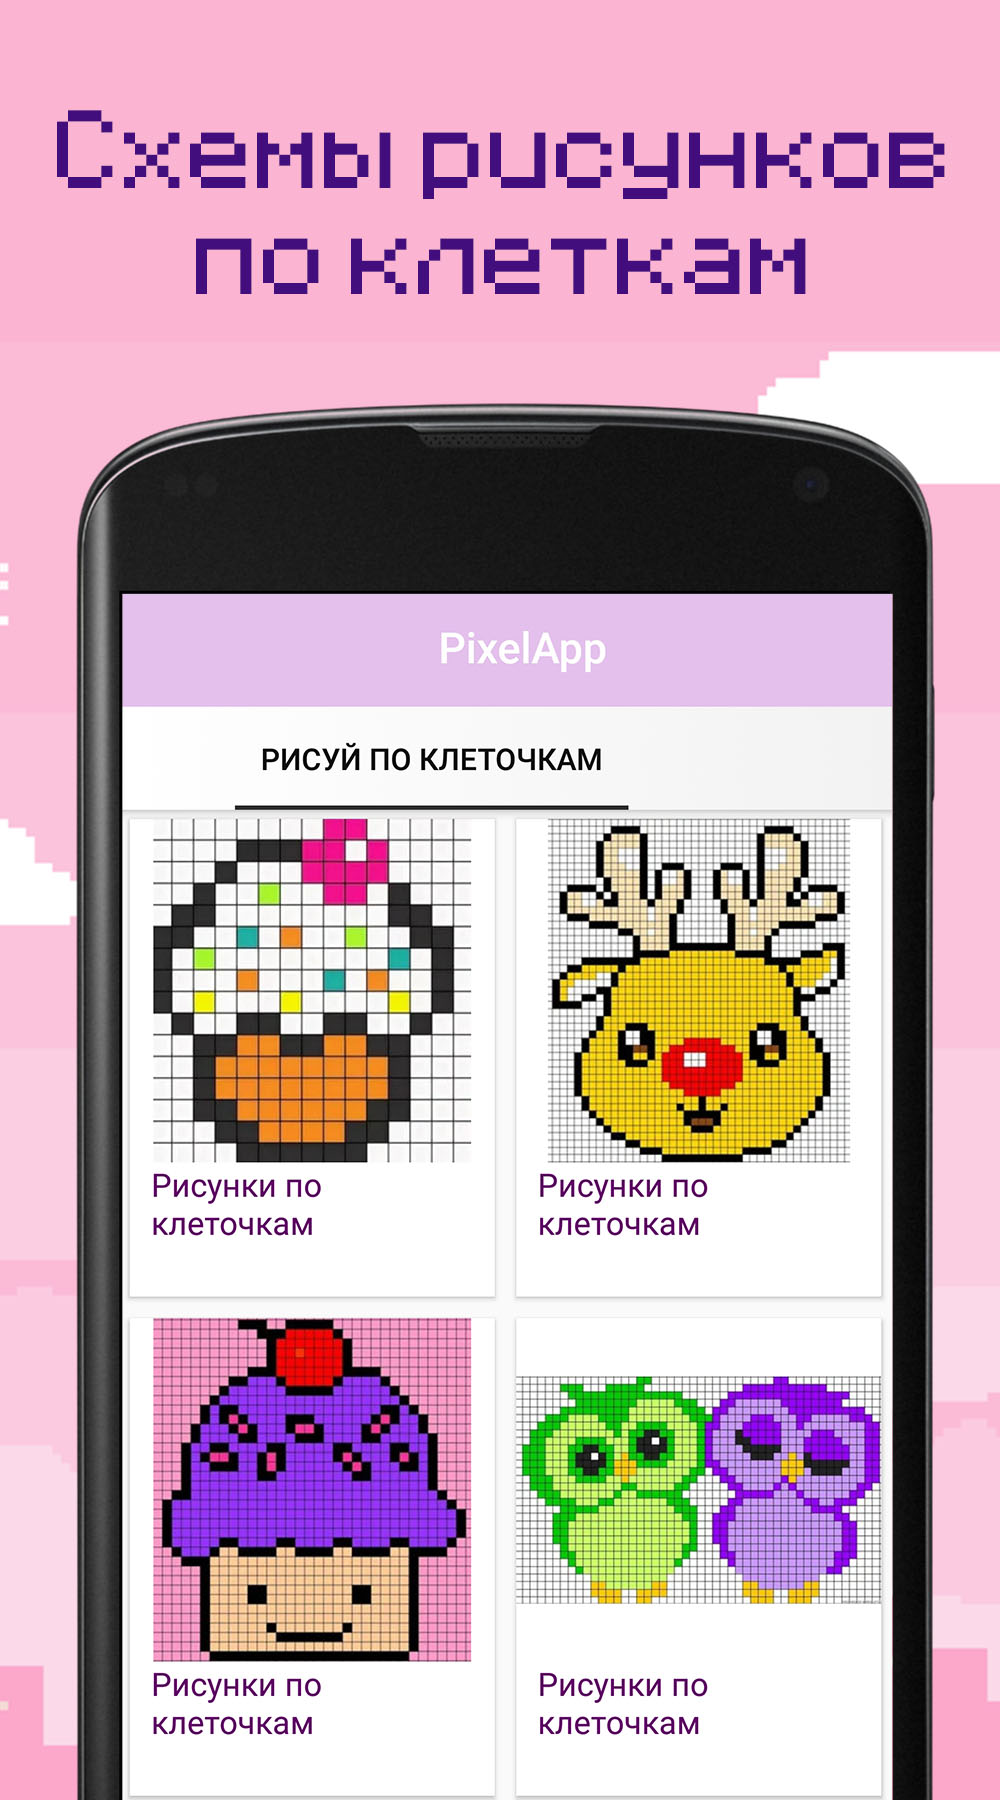 Pixel-App – Скачать Приложение Для Android – Каталог RuStore